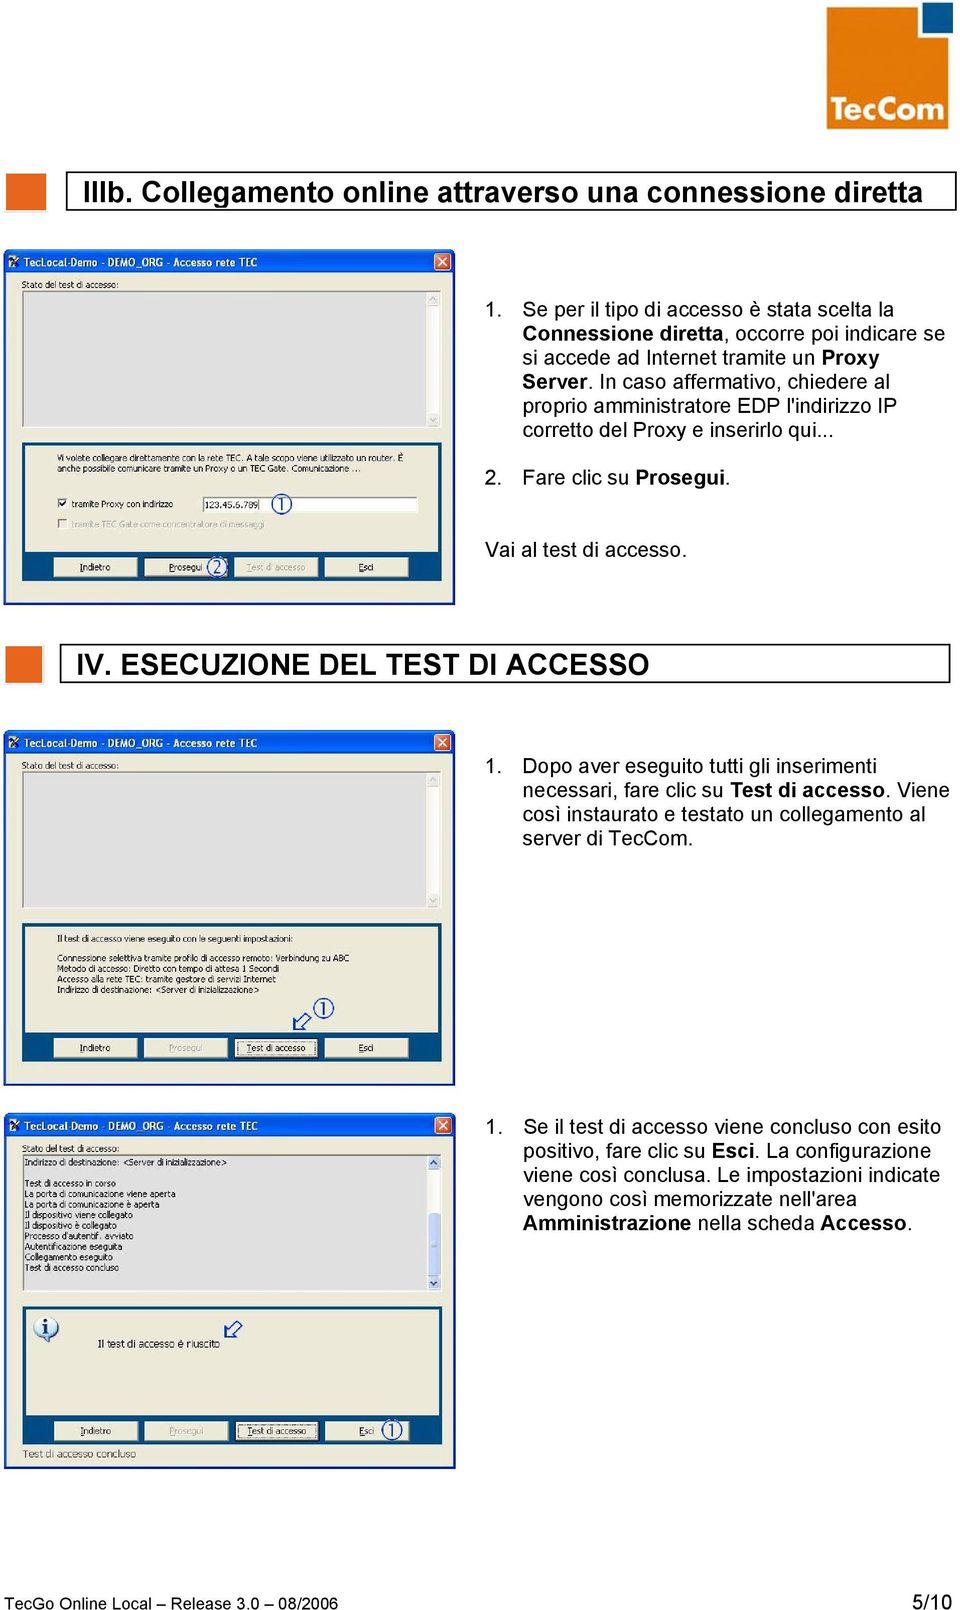 Dopo aver eseguito tutti gli inserimenti necessari, fare clic su Test di accesso. Viene così instaurato e testato un collegamento al server di TecCom. 1.